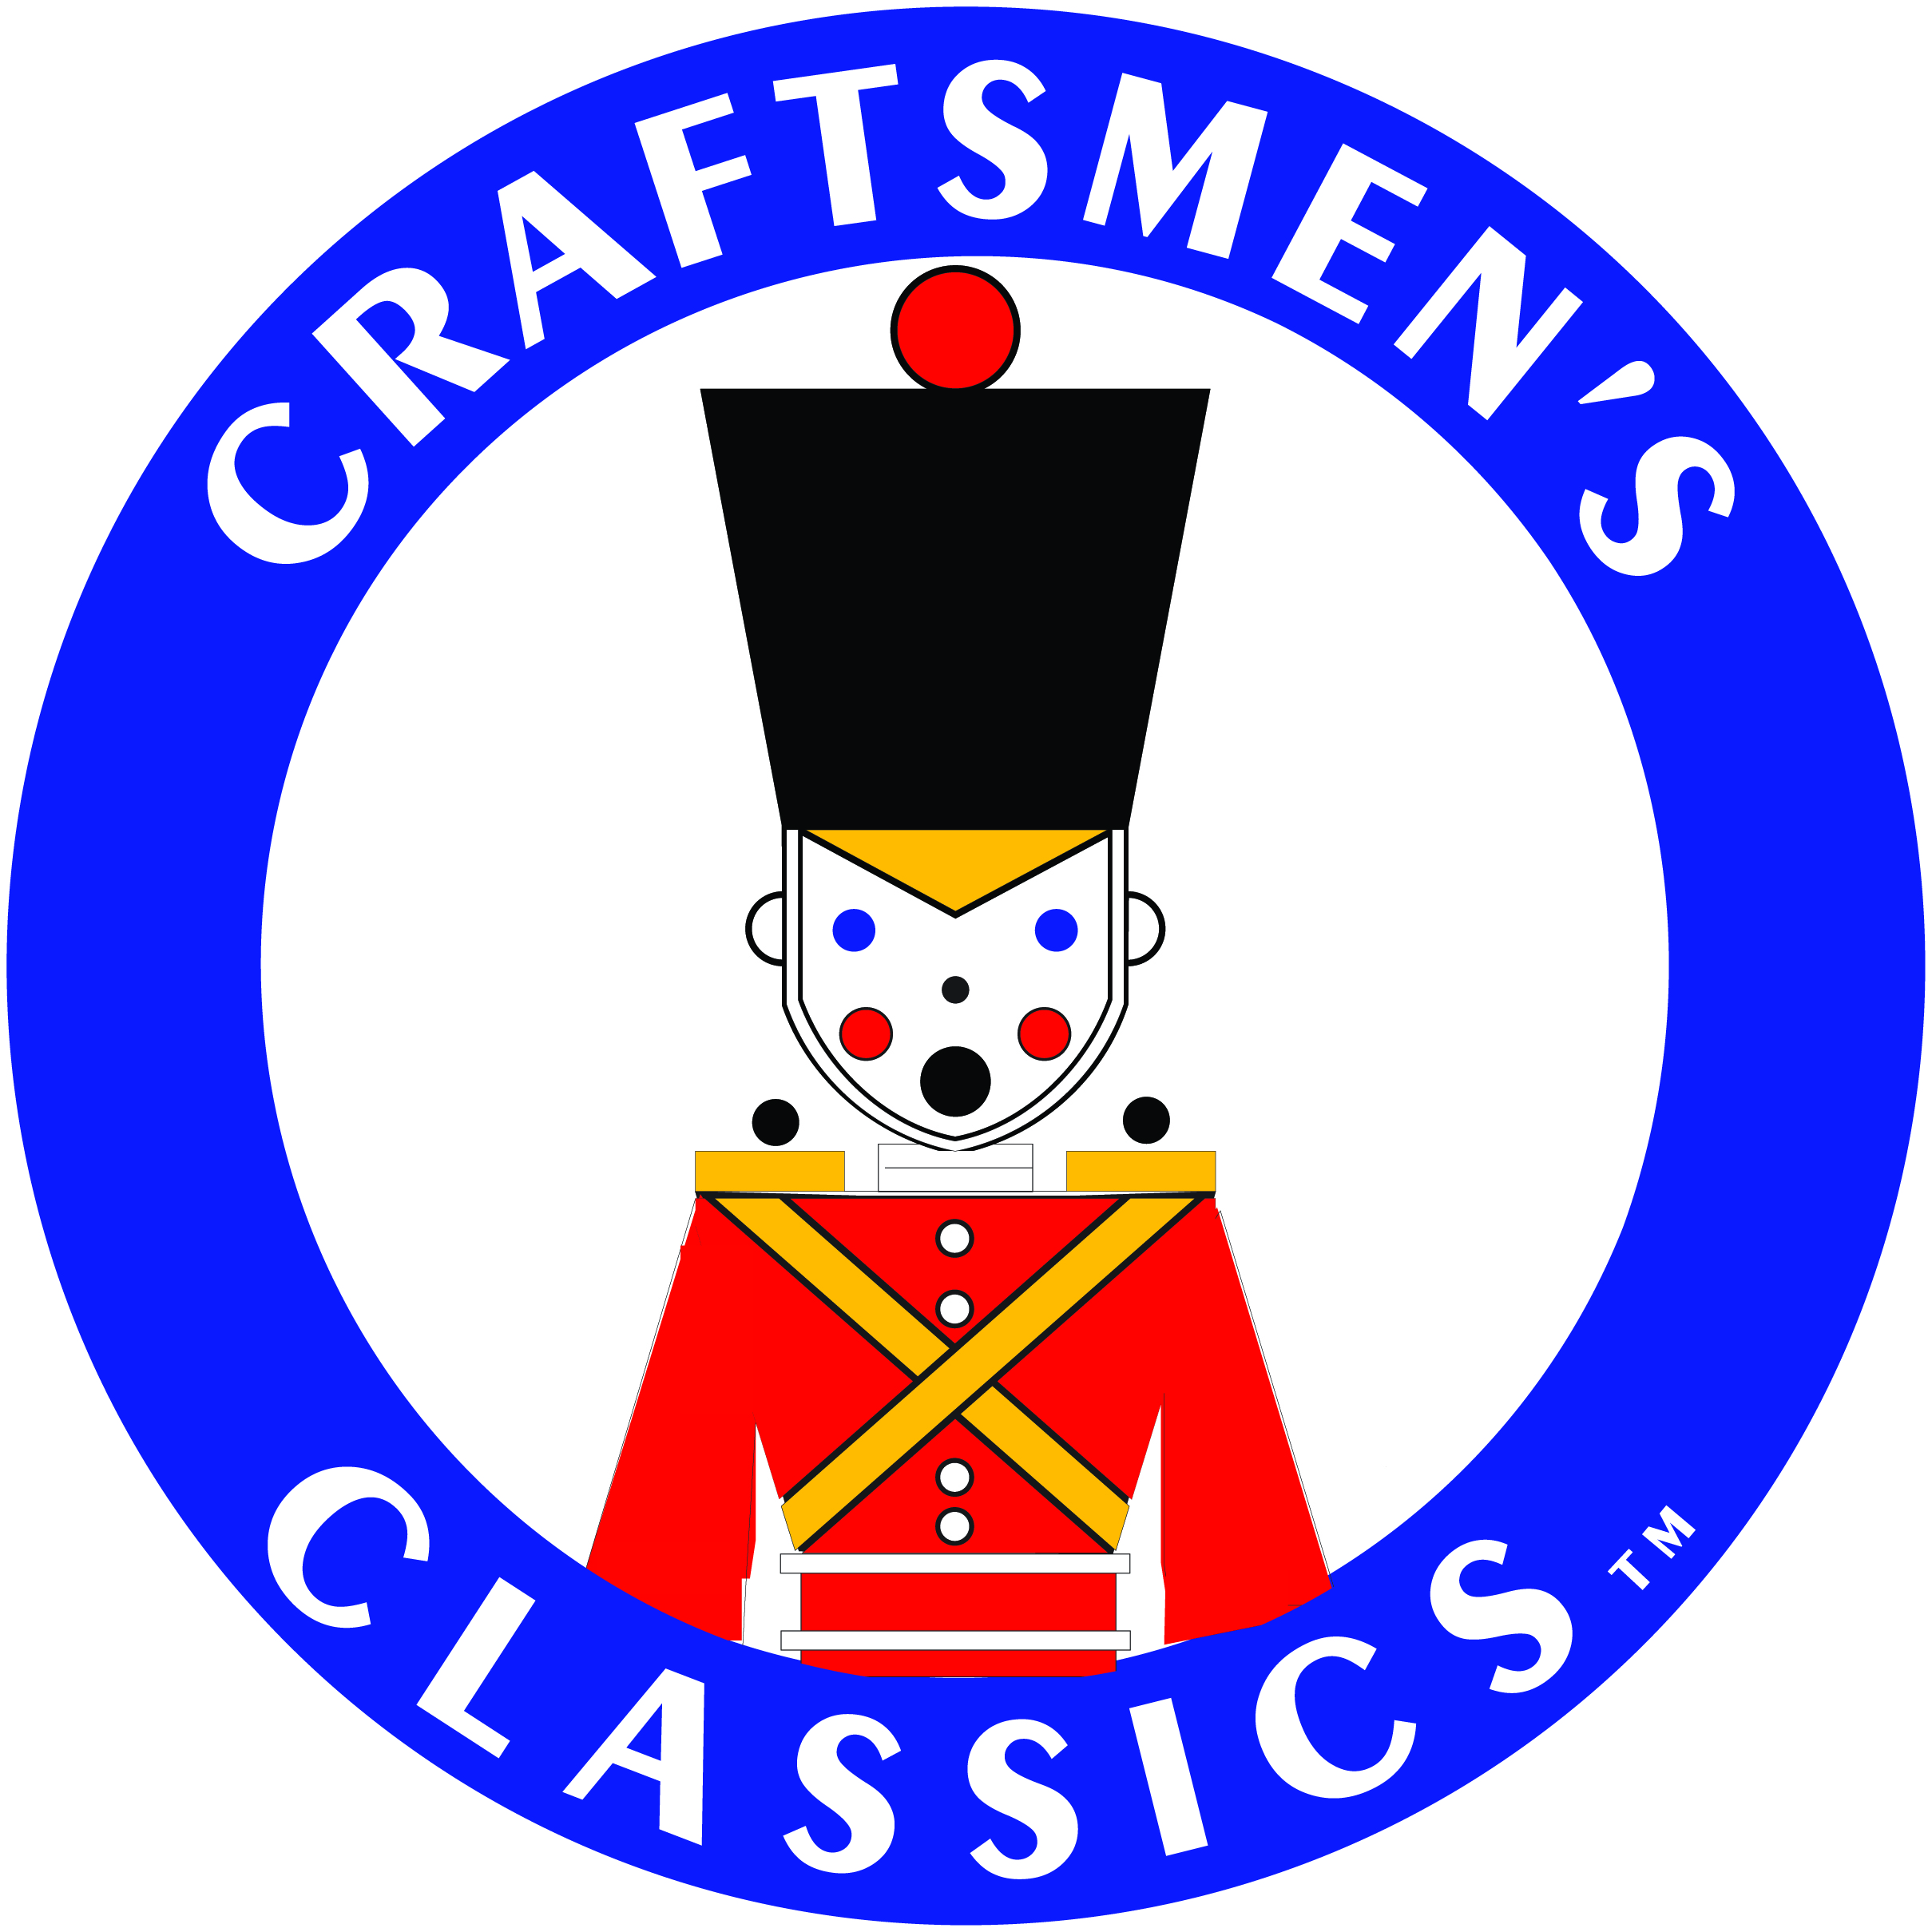 Craftsmen's Classics